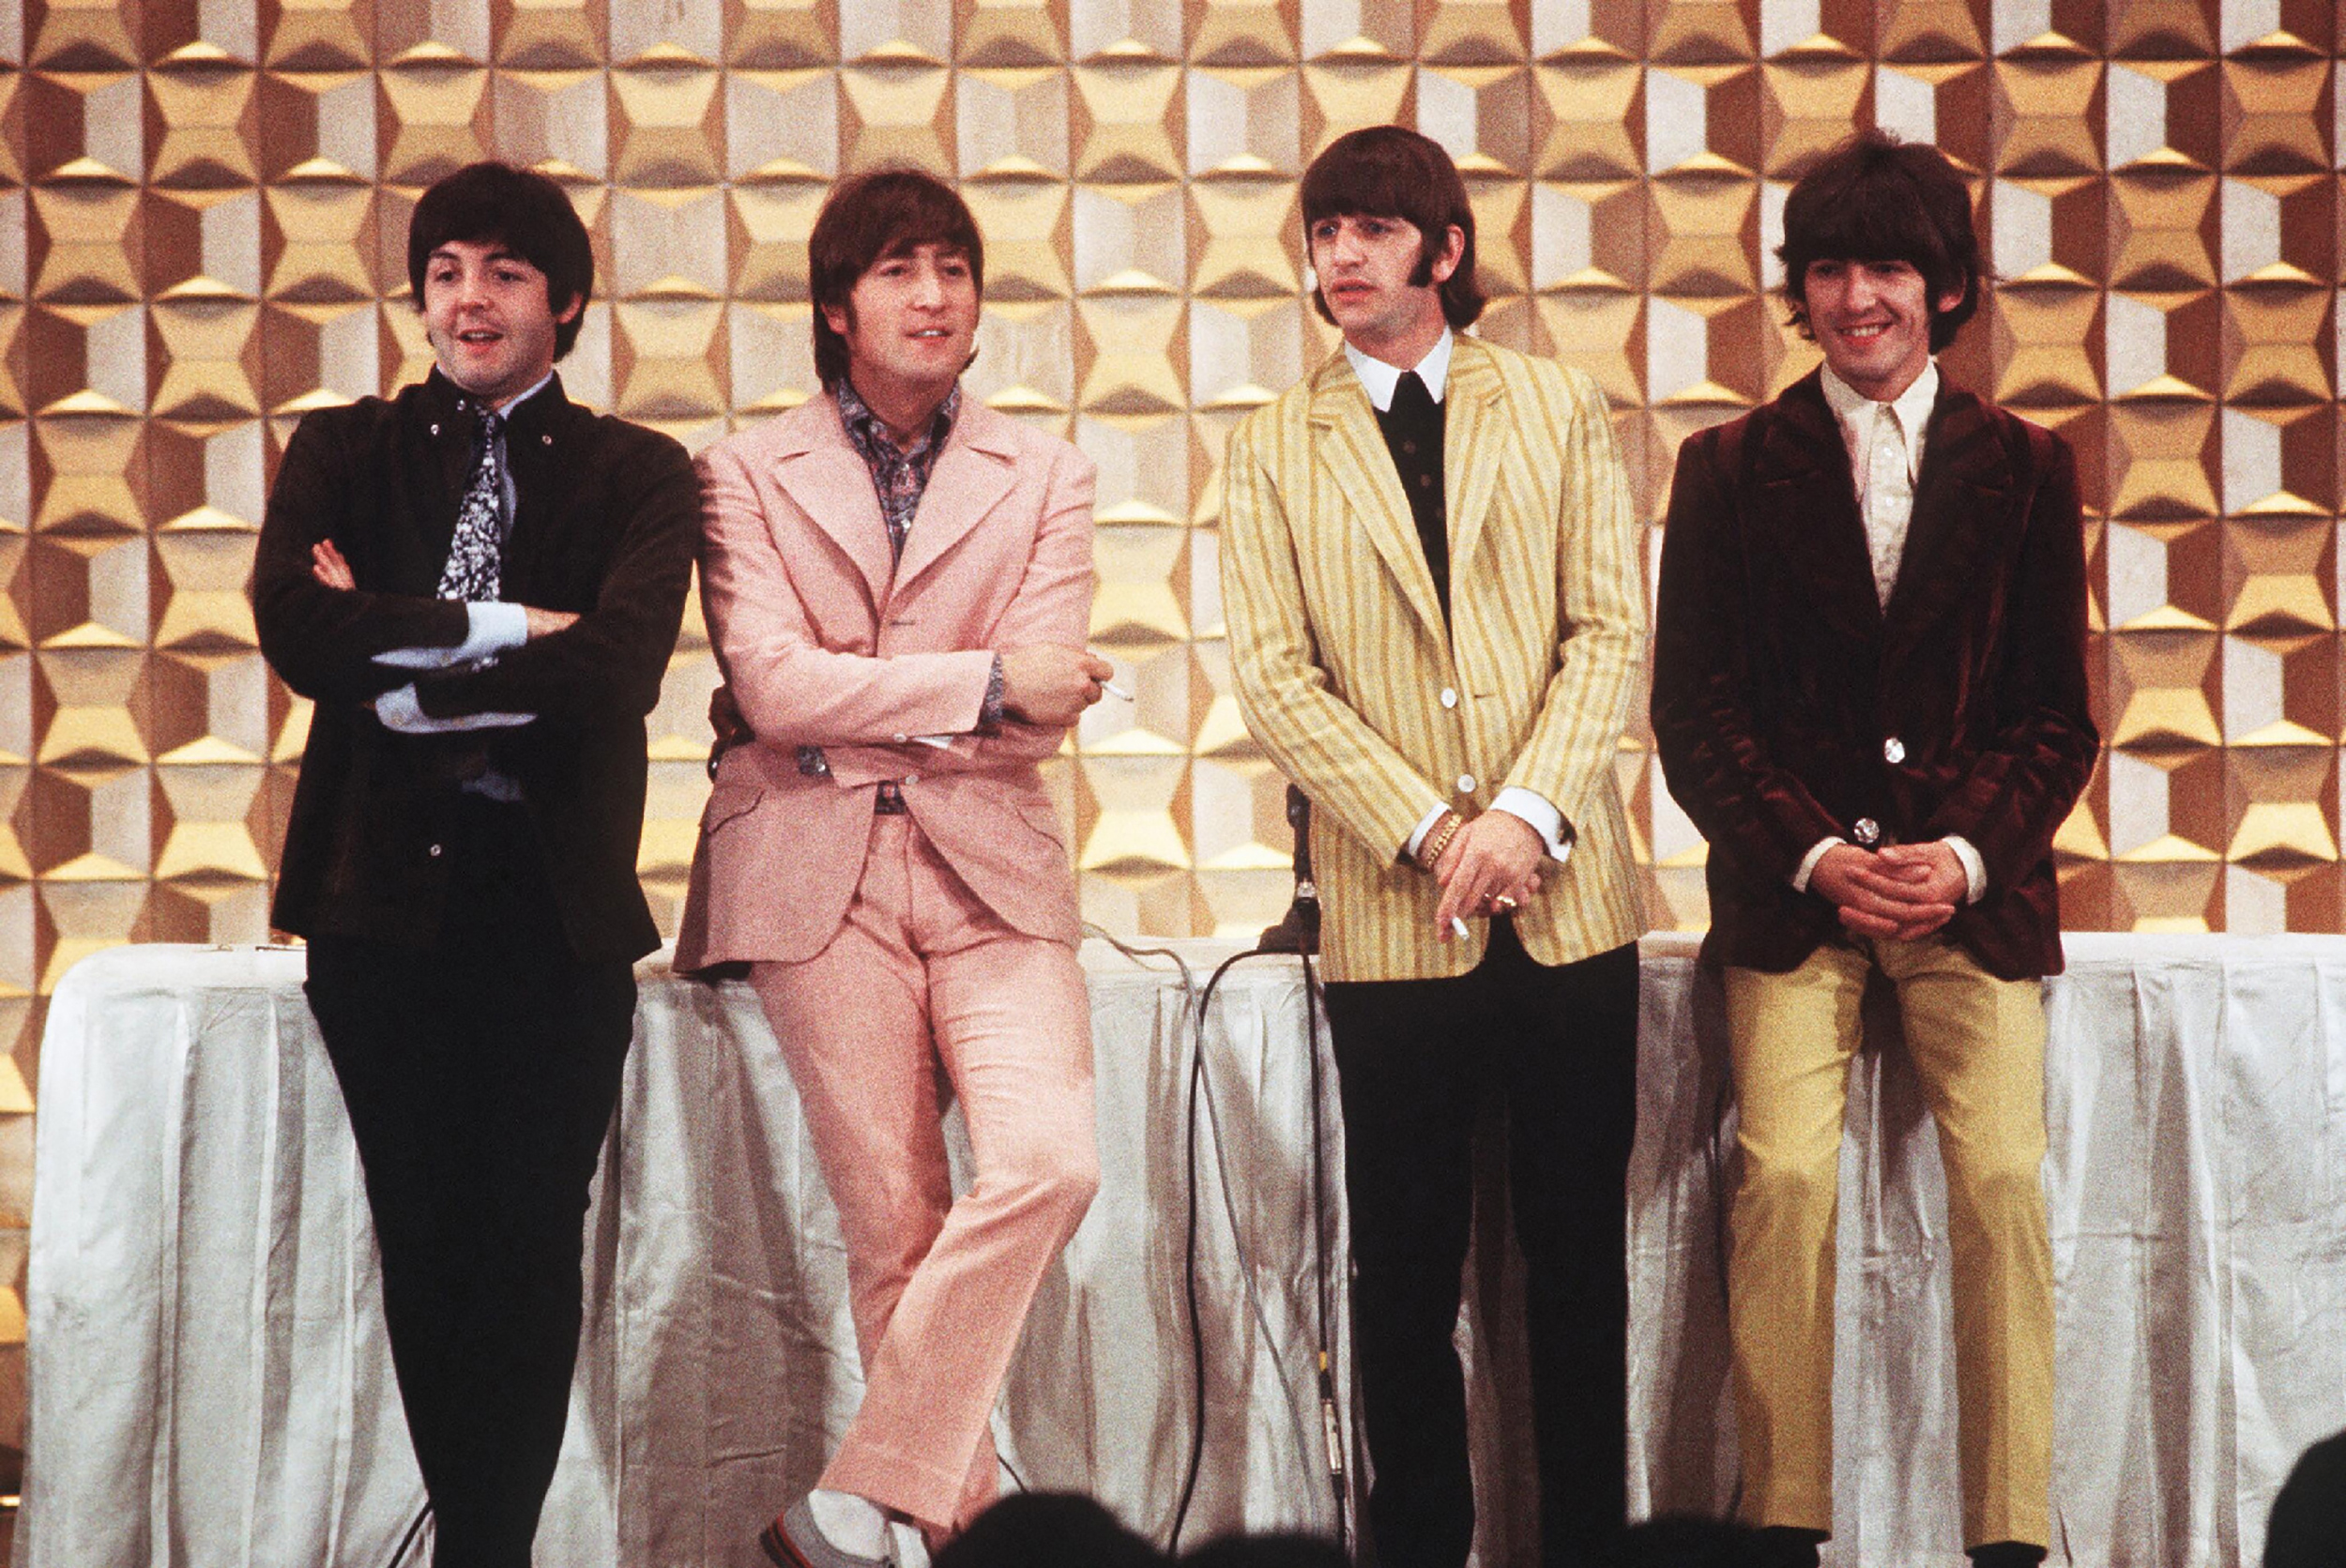 Le groupe de Liverpool, composé de Paul McCartney, John Lennon, Ringo Starr and George Harrison (de gauche à droite) s'était dissocié en 1970. AFP/Jiji Press